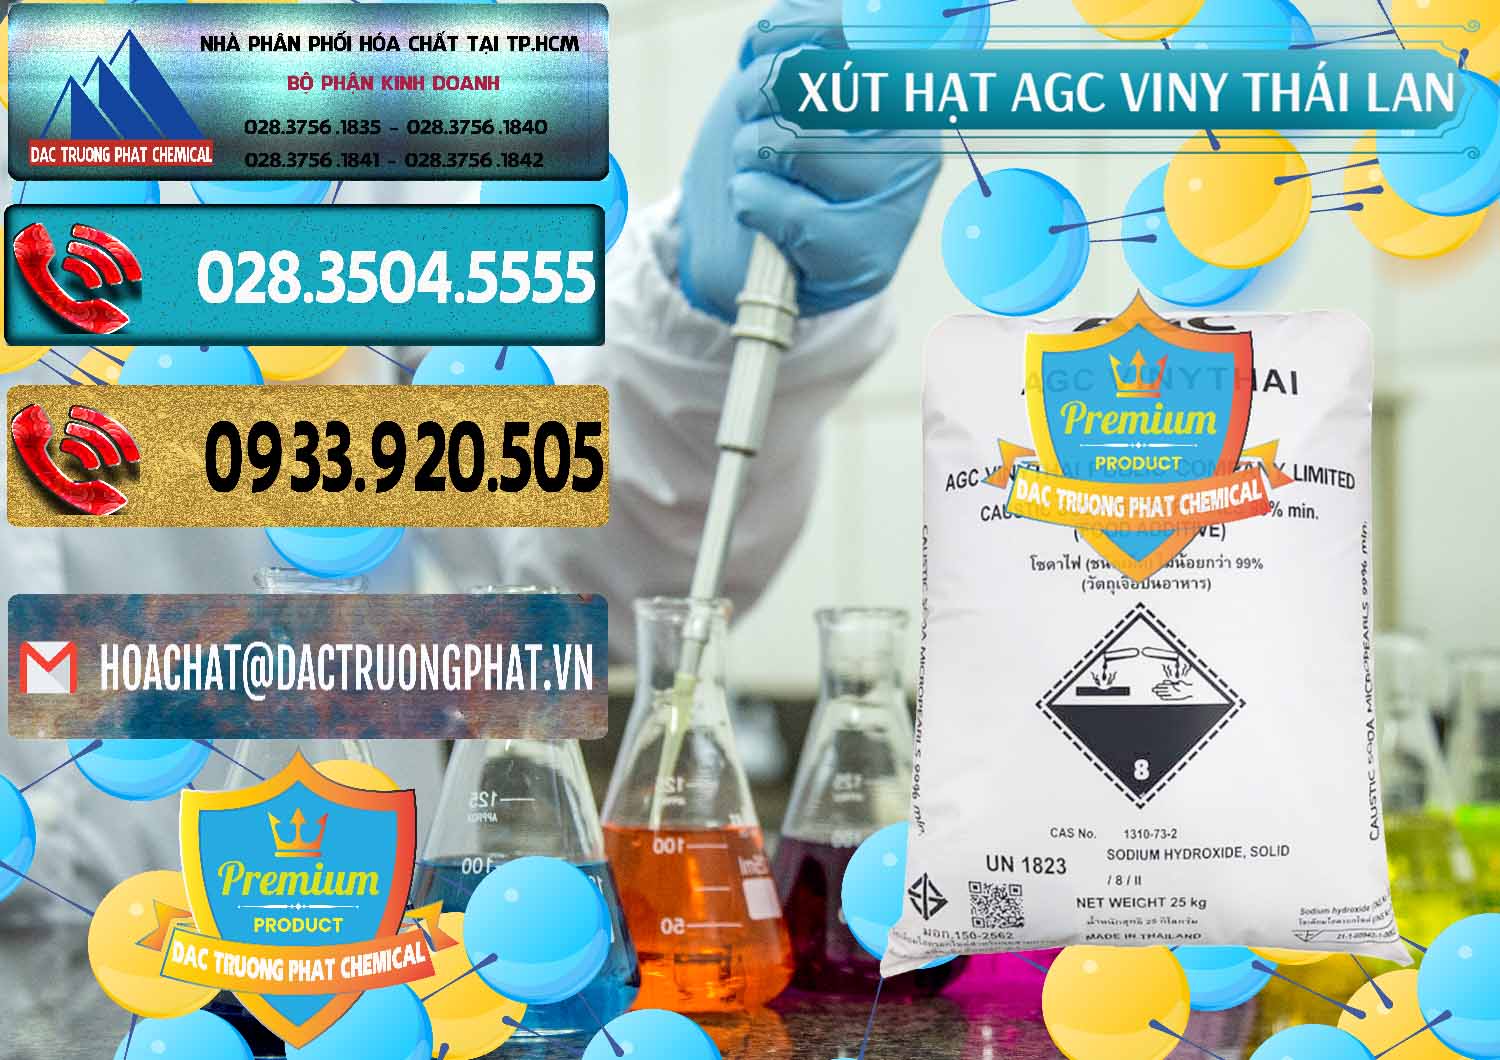 Cty nhập khẩu - bán Xút Hạt - NaOH Bột 99% AGC Viny Thái Lan - 0399 - Cty kinh doanh - phân phối hóa chất tại TP.HCM - hoachatdetnhuom.com